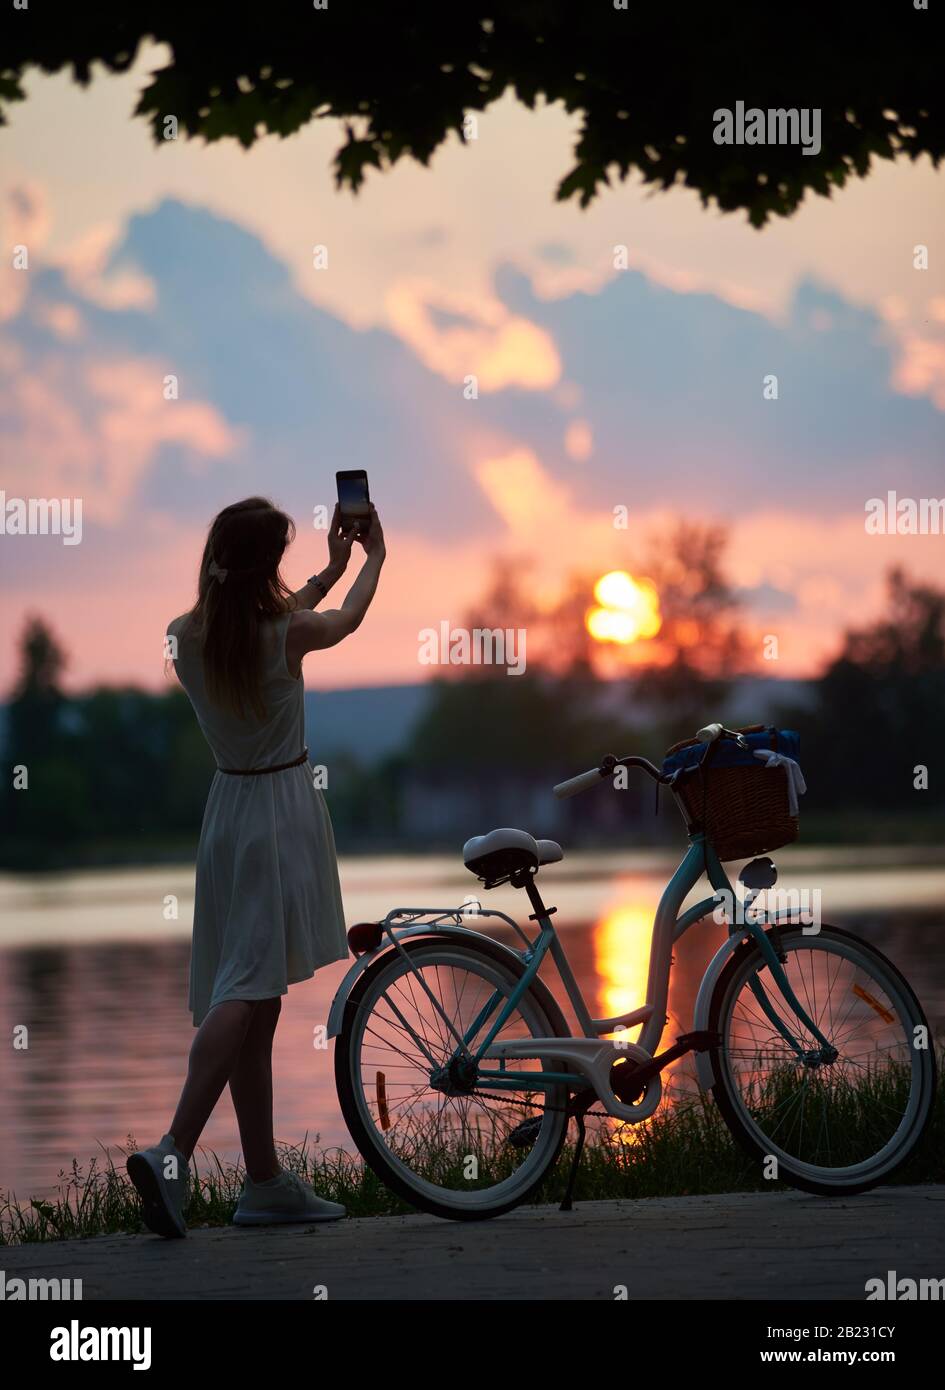 Lady vicino a una moto retrò scatta una foto al tramonto su un telefono cellulare. Una ragazza vestita di un abito leggero con un arco sulla testa sta cercando di catturare il sole durante un bel tramonto vicino al lago Foto Stock